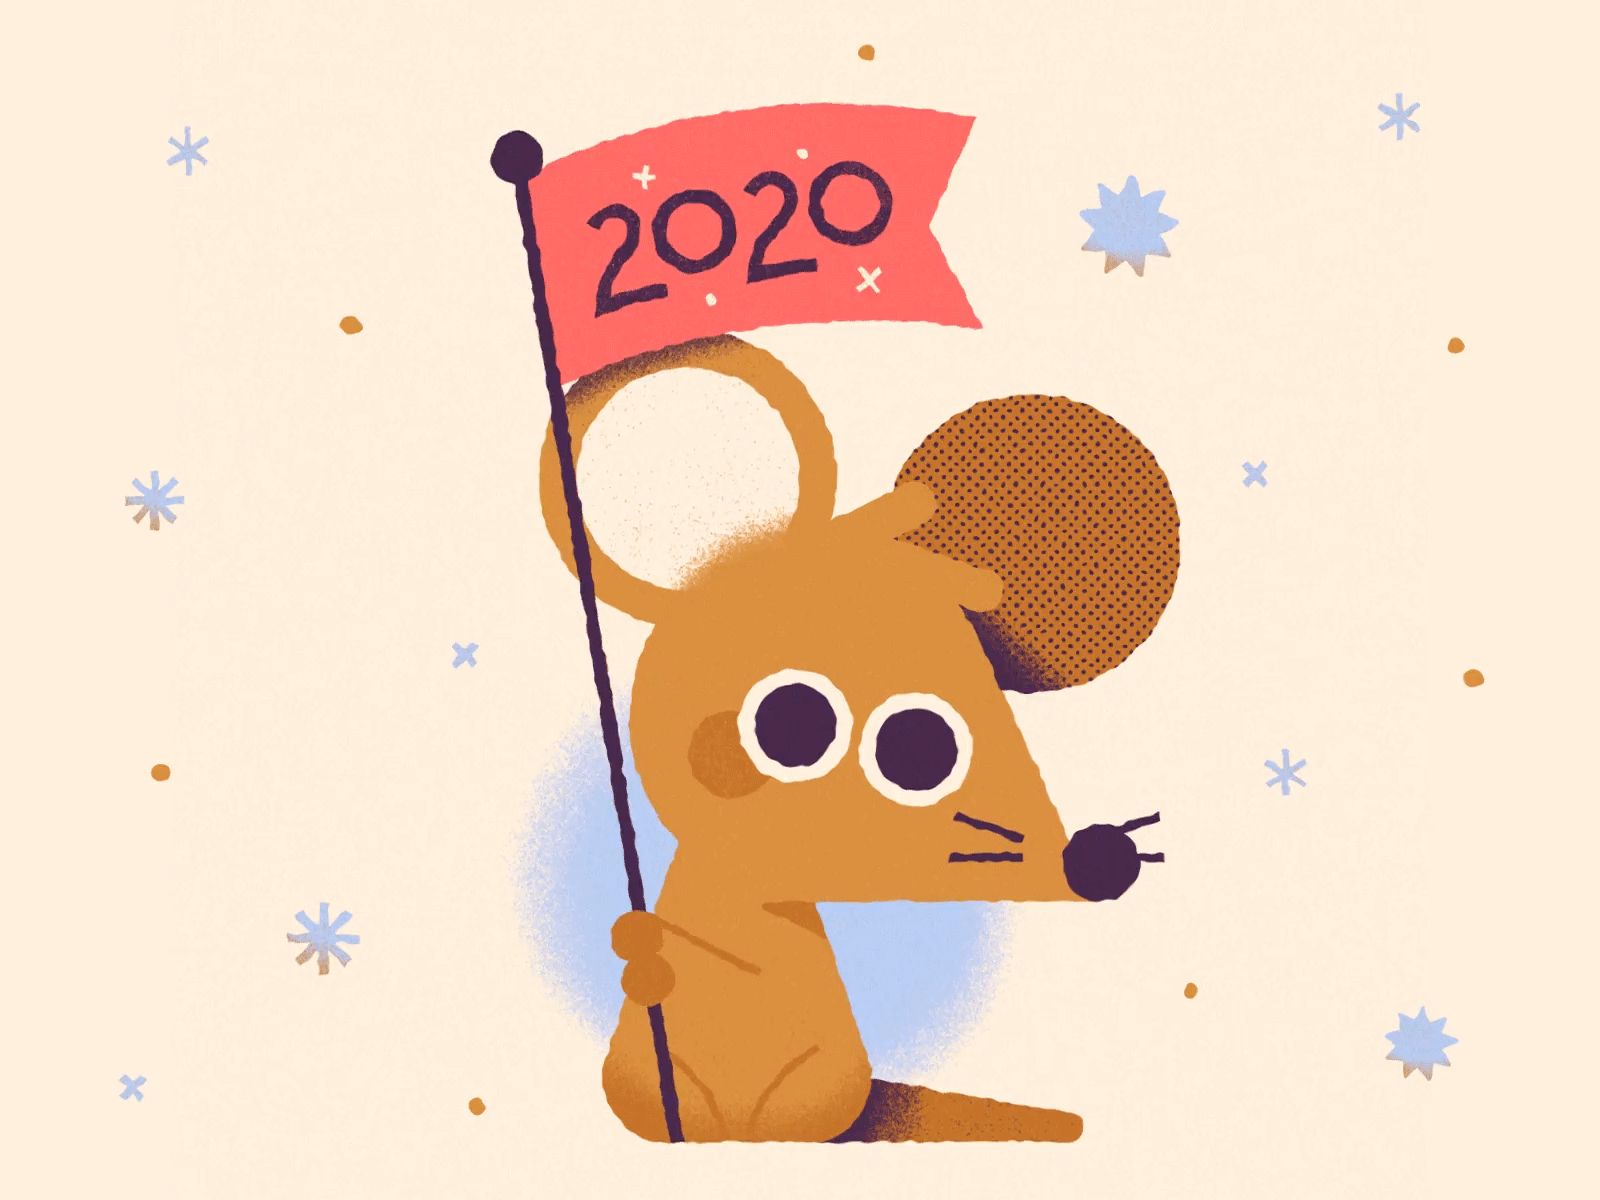 Happy 2020!